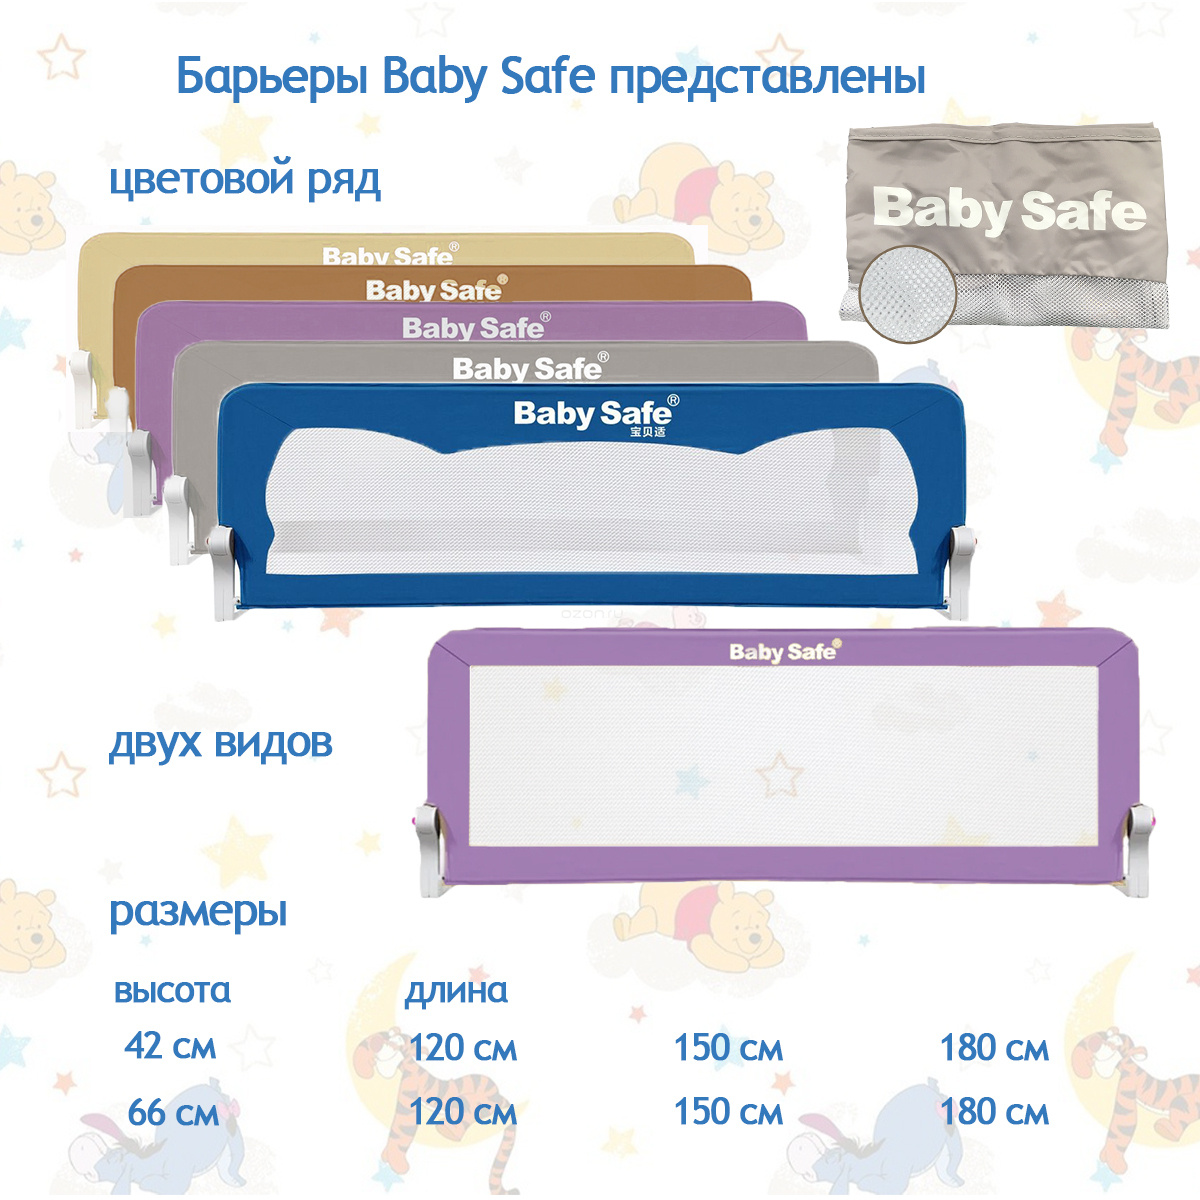 кликайте на бренд BABY SAFE и выбирайте товары для детской безопасности